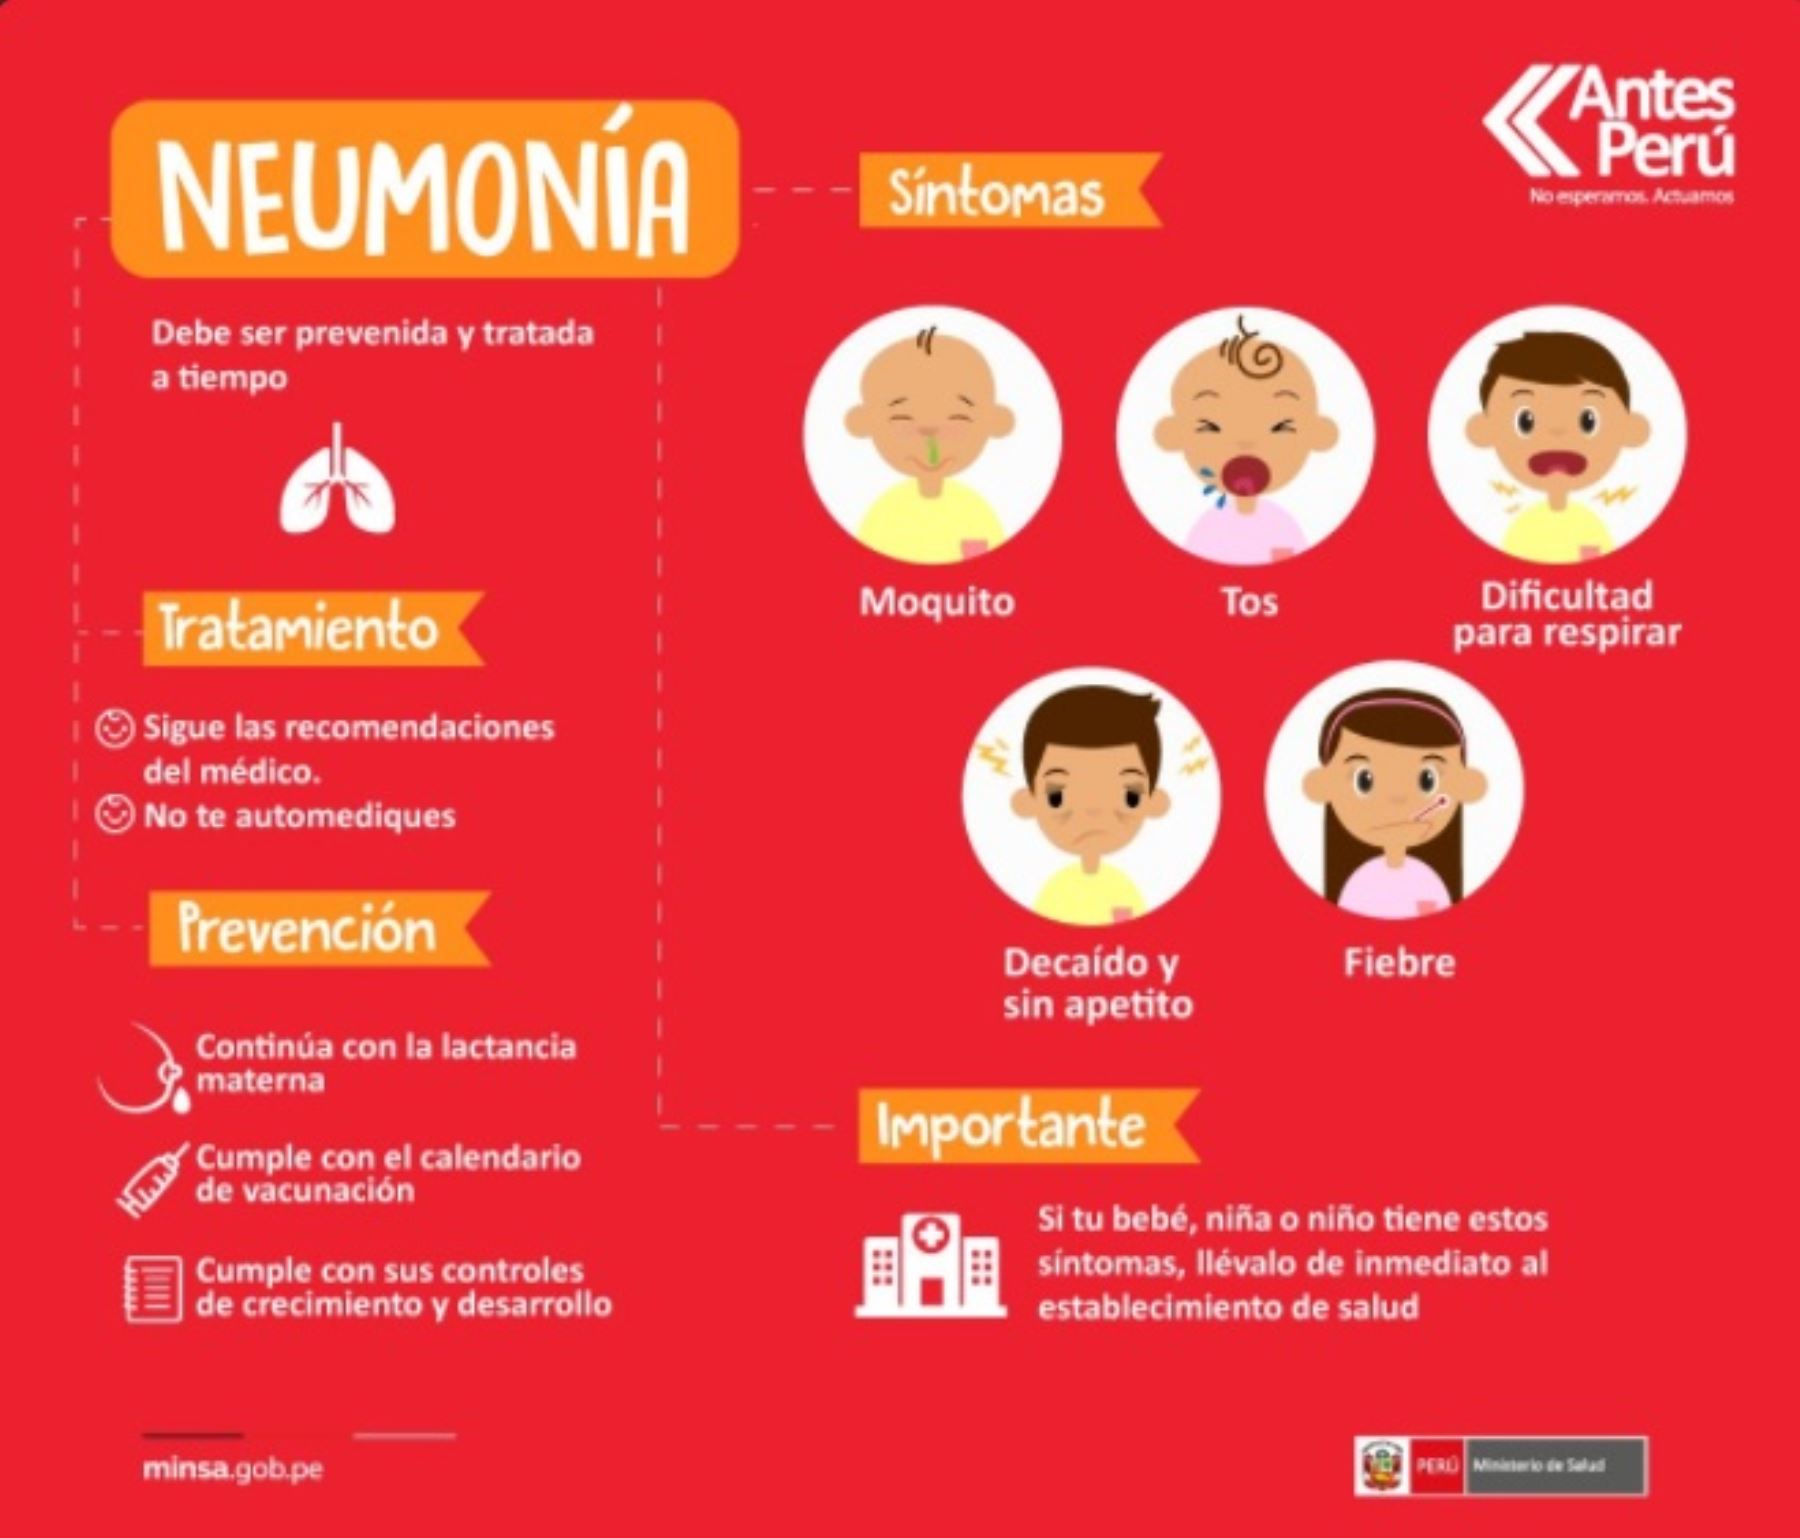 Neumonía: conoce los síntomas, tratamiento y como prevenirla